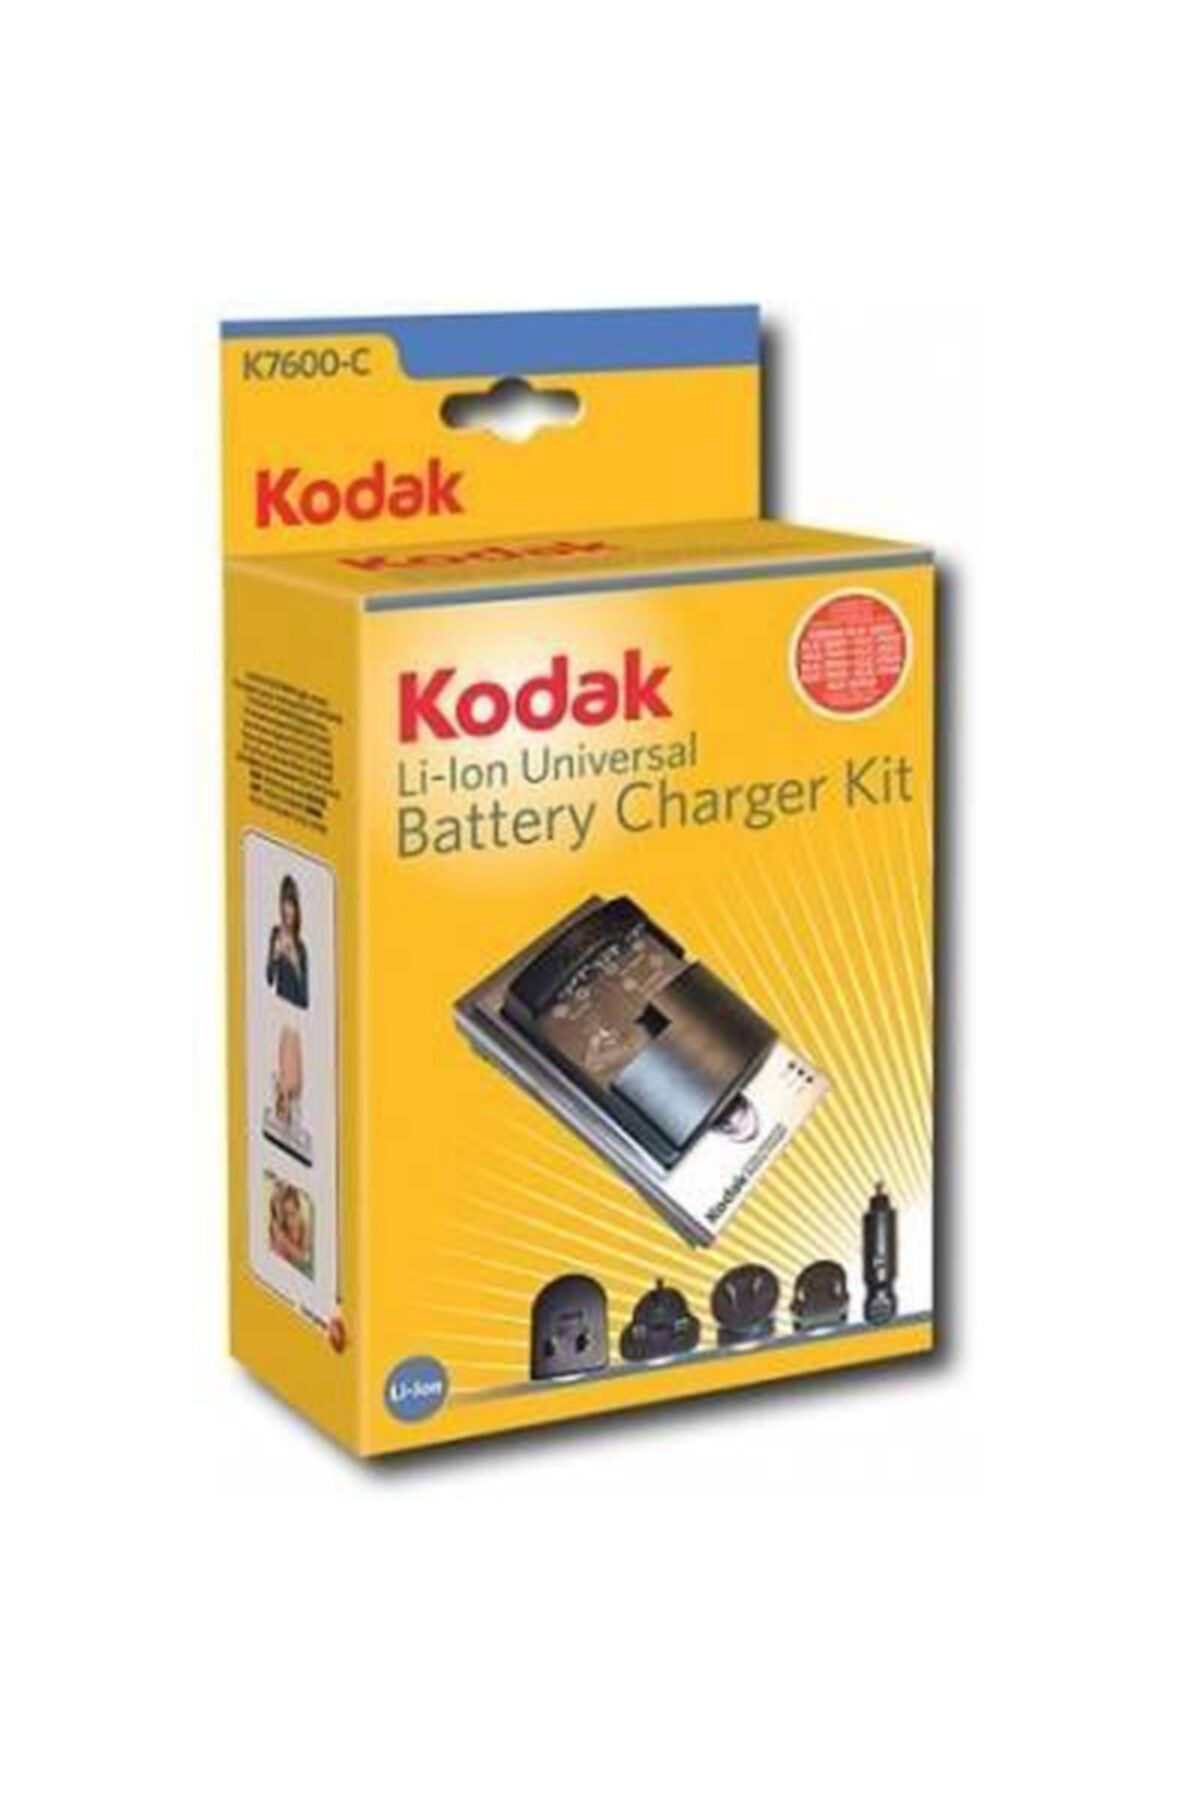 Kodak Fujifilm Np-50 Batarya Için K7600-c Şarj Aleti Araç Kiti Uyumlu